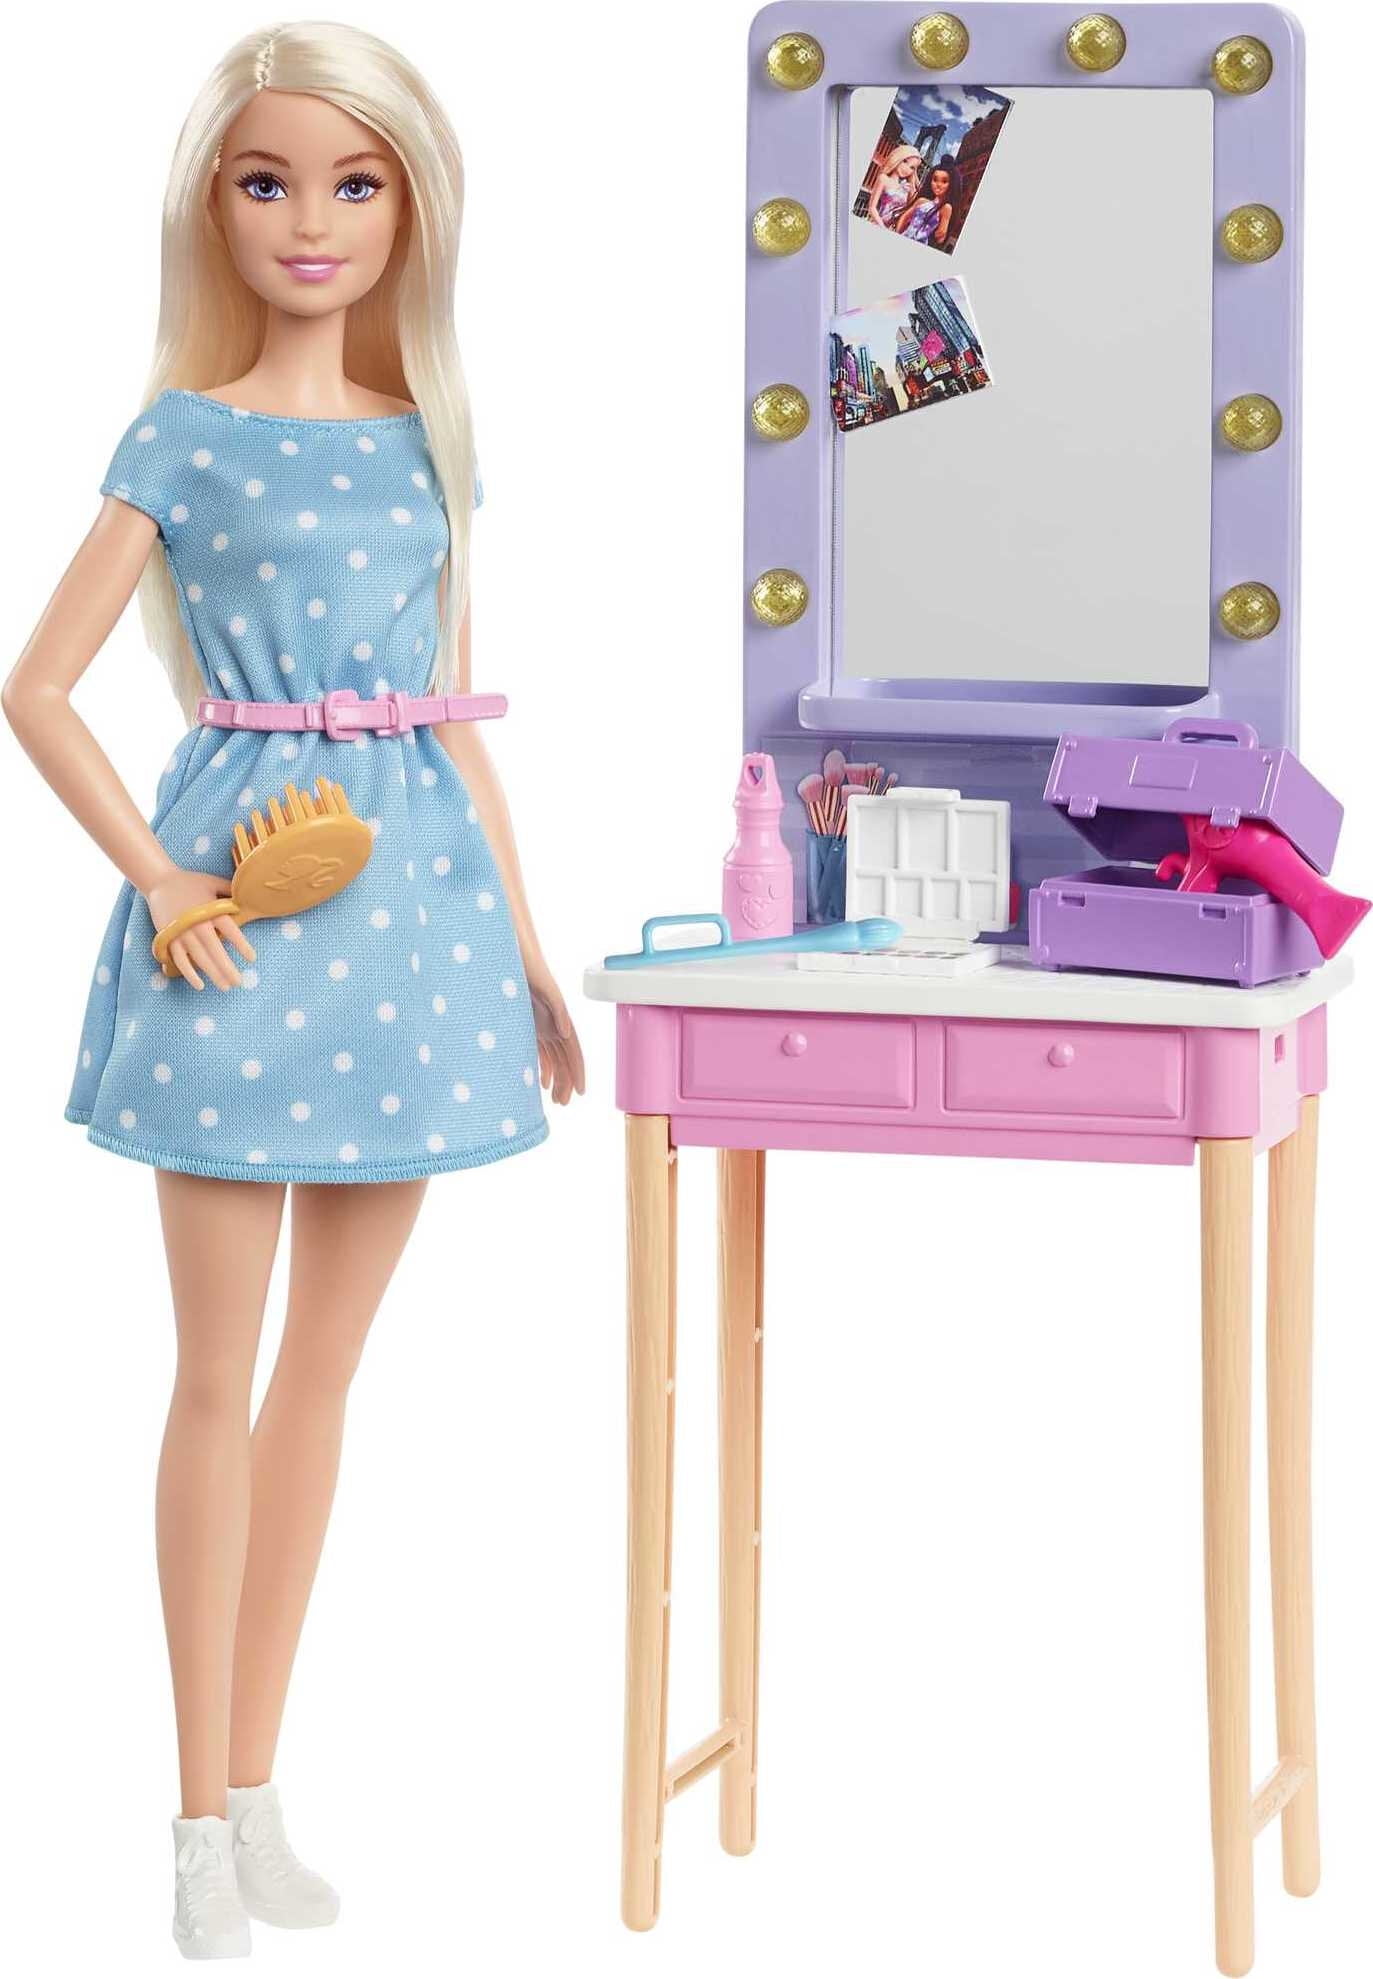 Barbie Big City Big Dreams Doll & Playset, Blonde Malibu Doll with